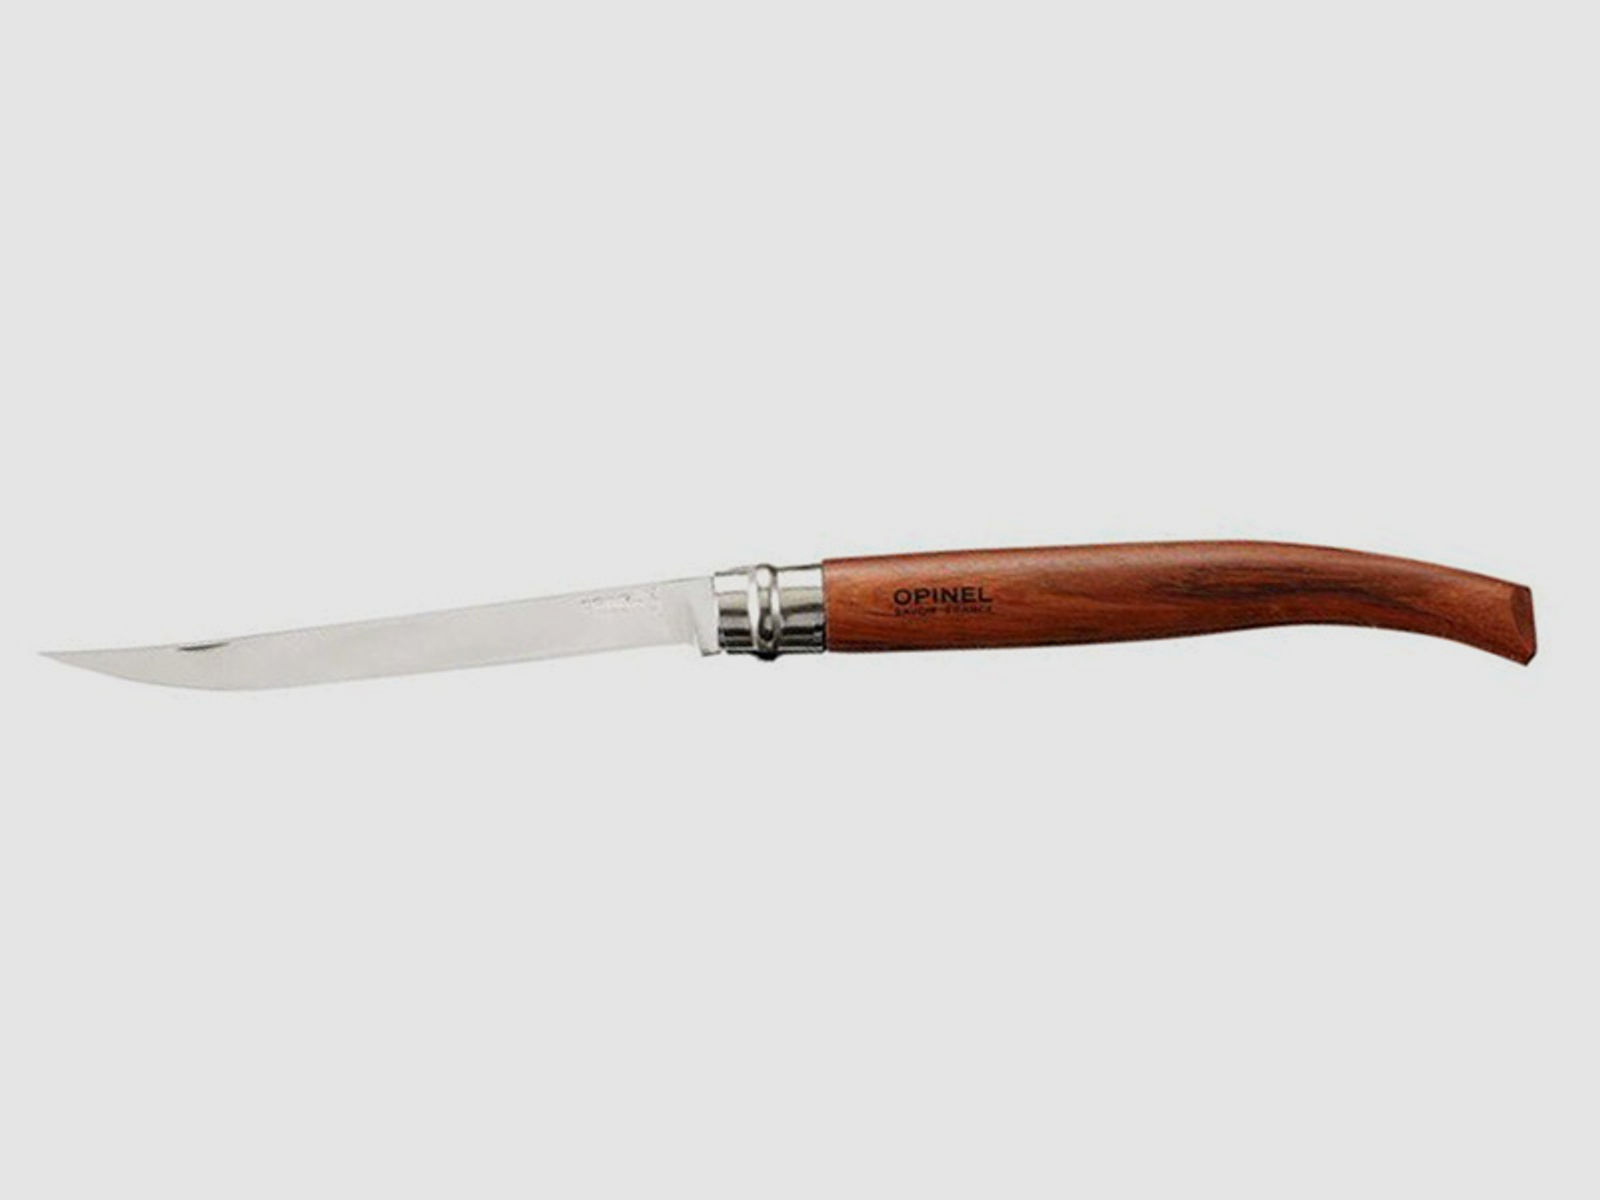 Taschenmesser Opinel No15 Slim Line Stahl 12C27 KlingenlĂ¤nge 14,5 cm Padouk Griff (P18)